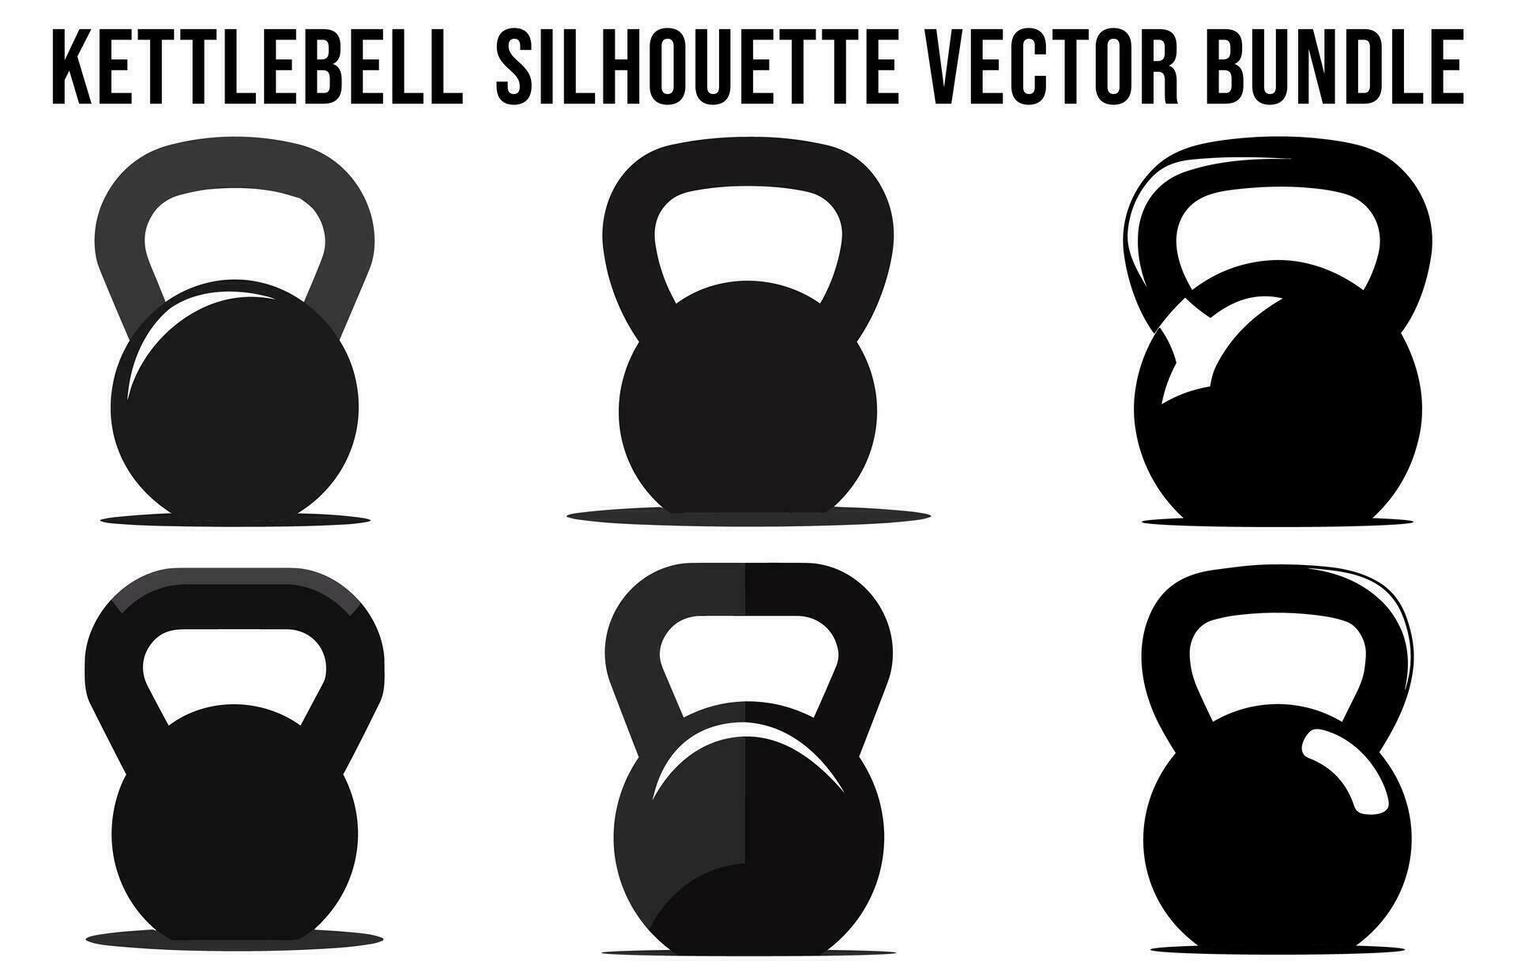 reeks van kettlebell silhouet vector bundel, Sportschool uitrusting element silhouetten